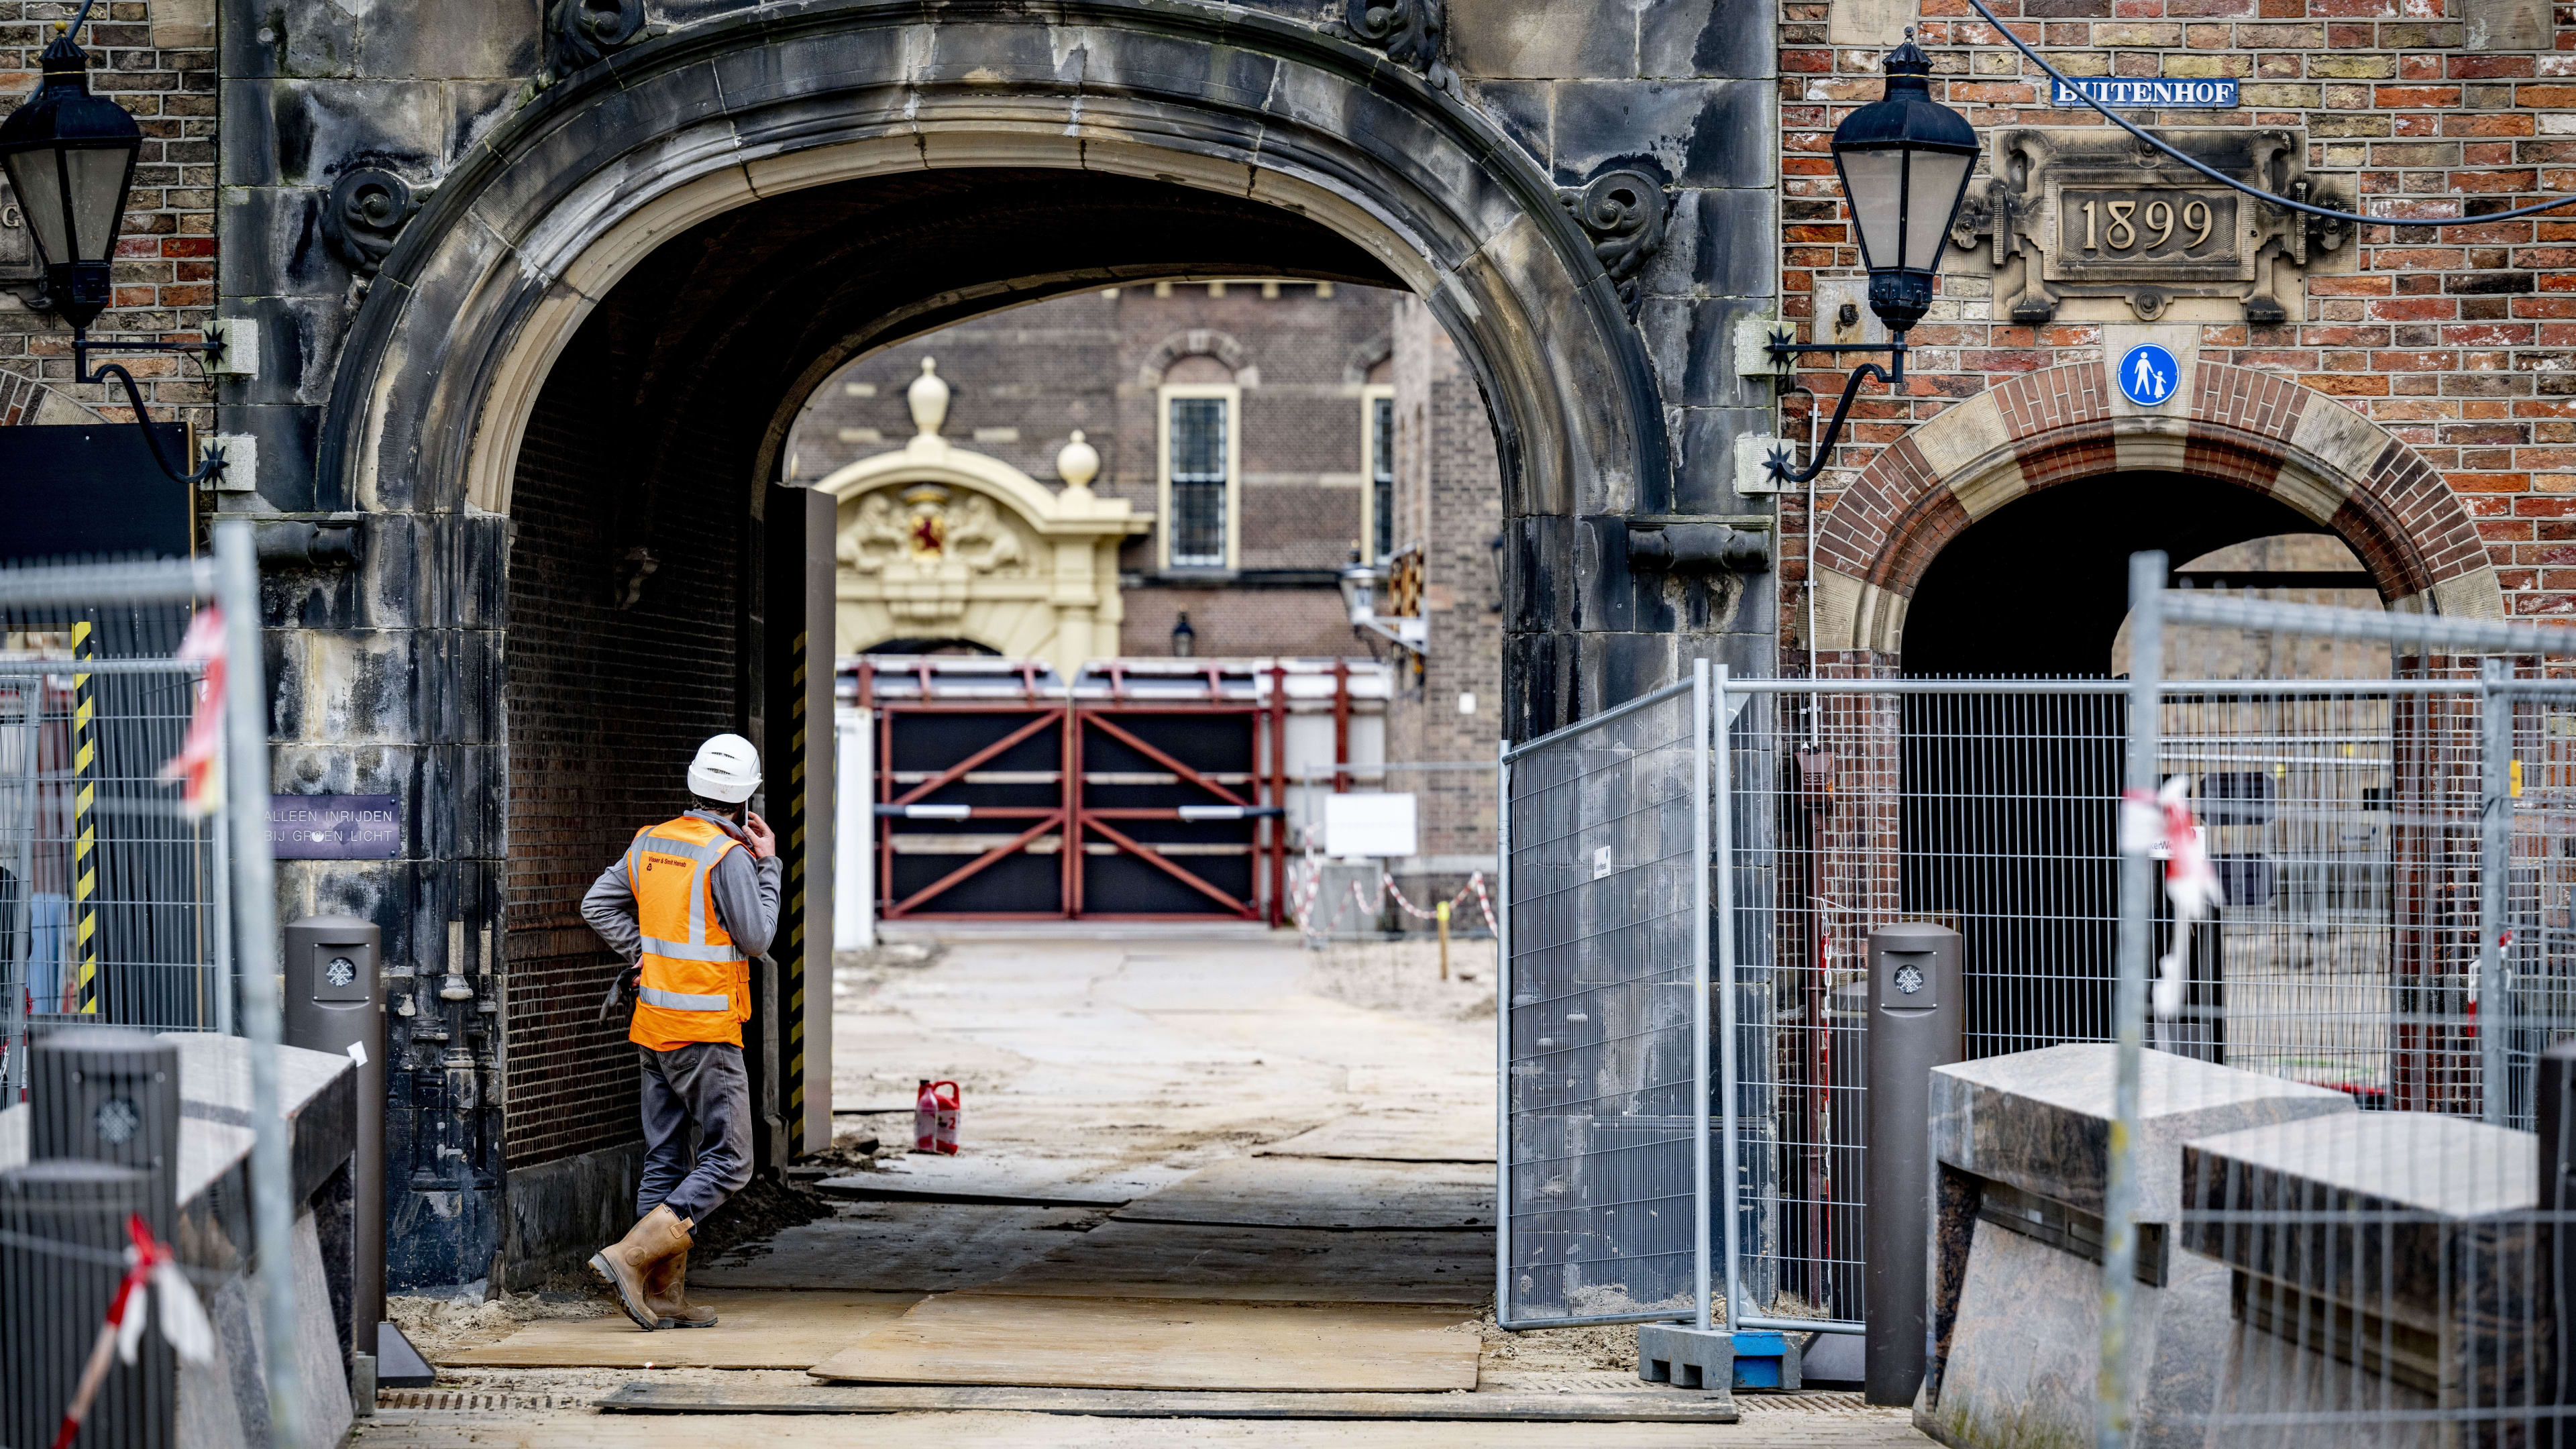 Milieuorganisatie naar rechter om verbouwing Binnenhof stil te leggen